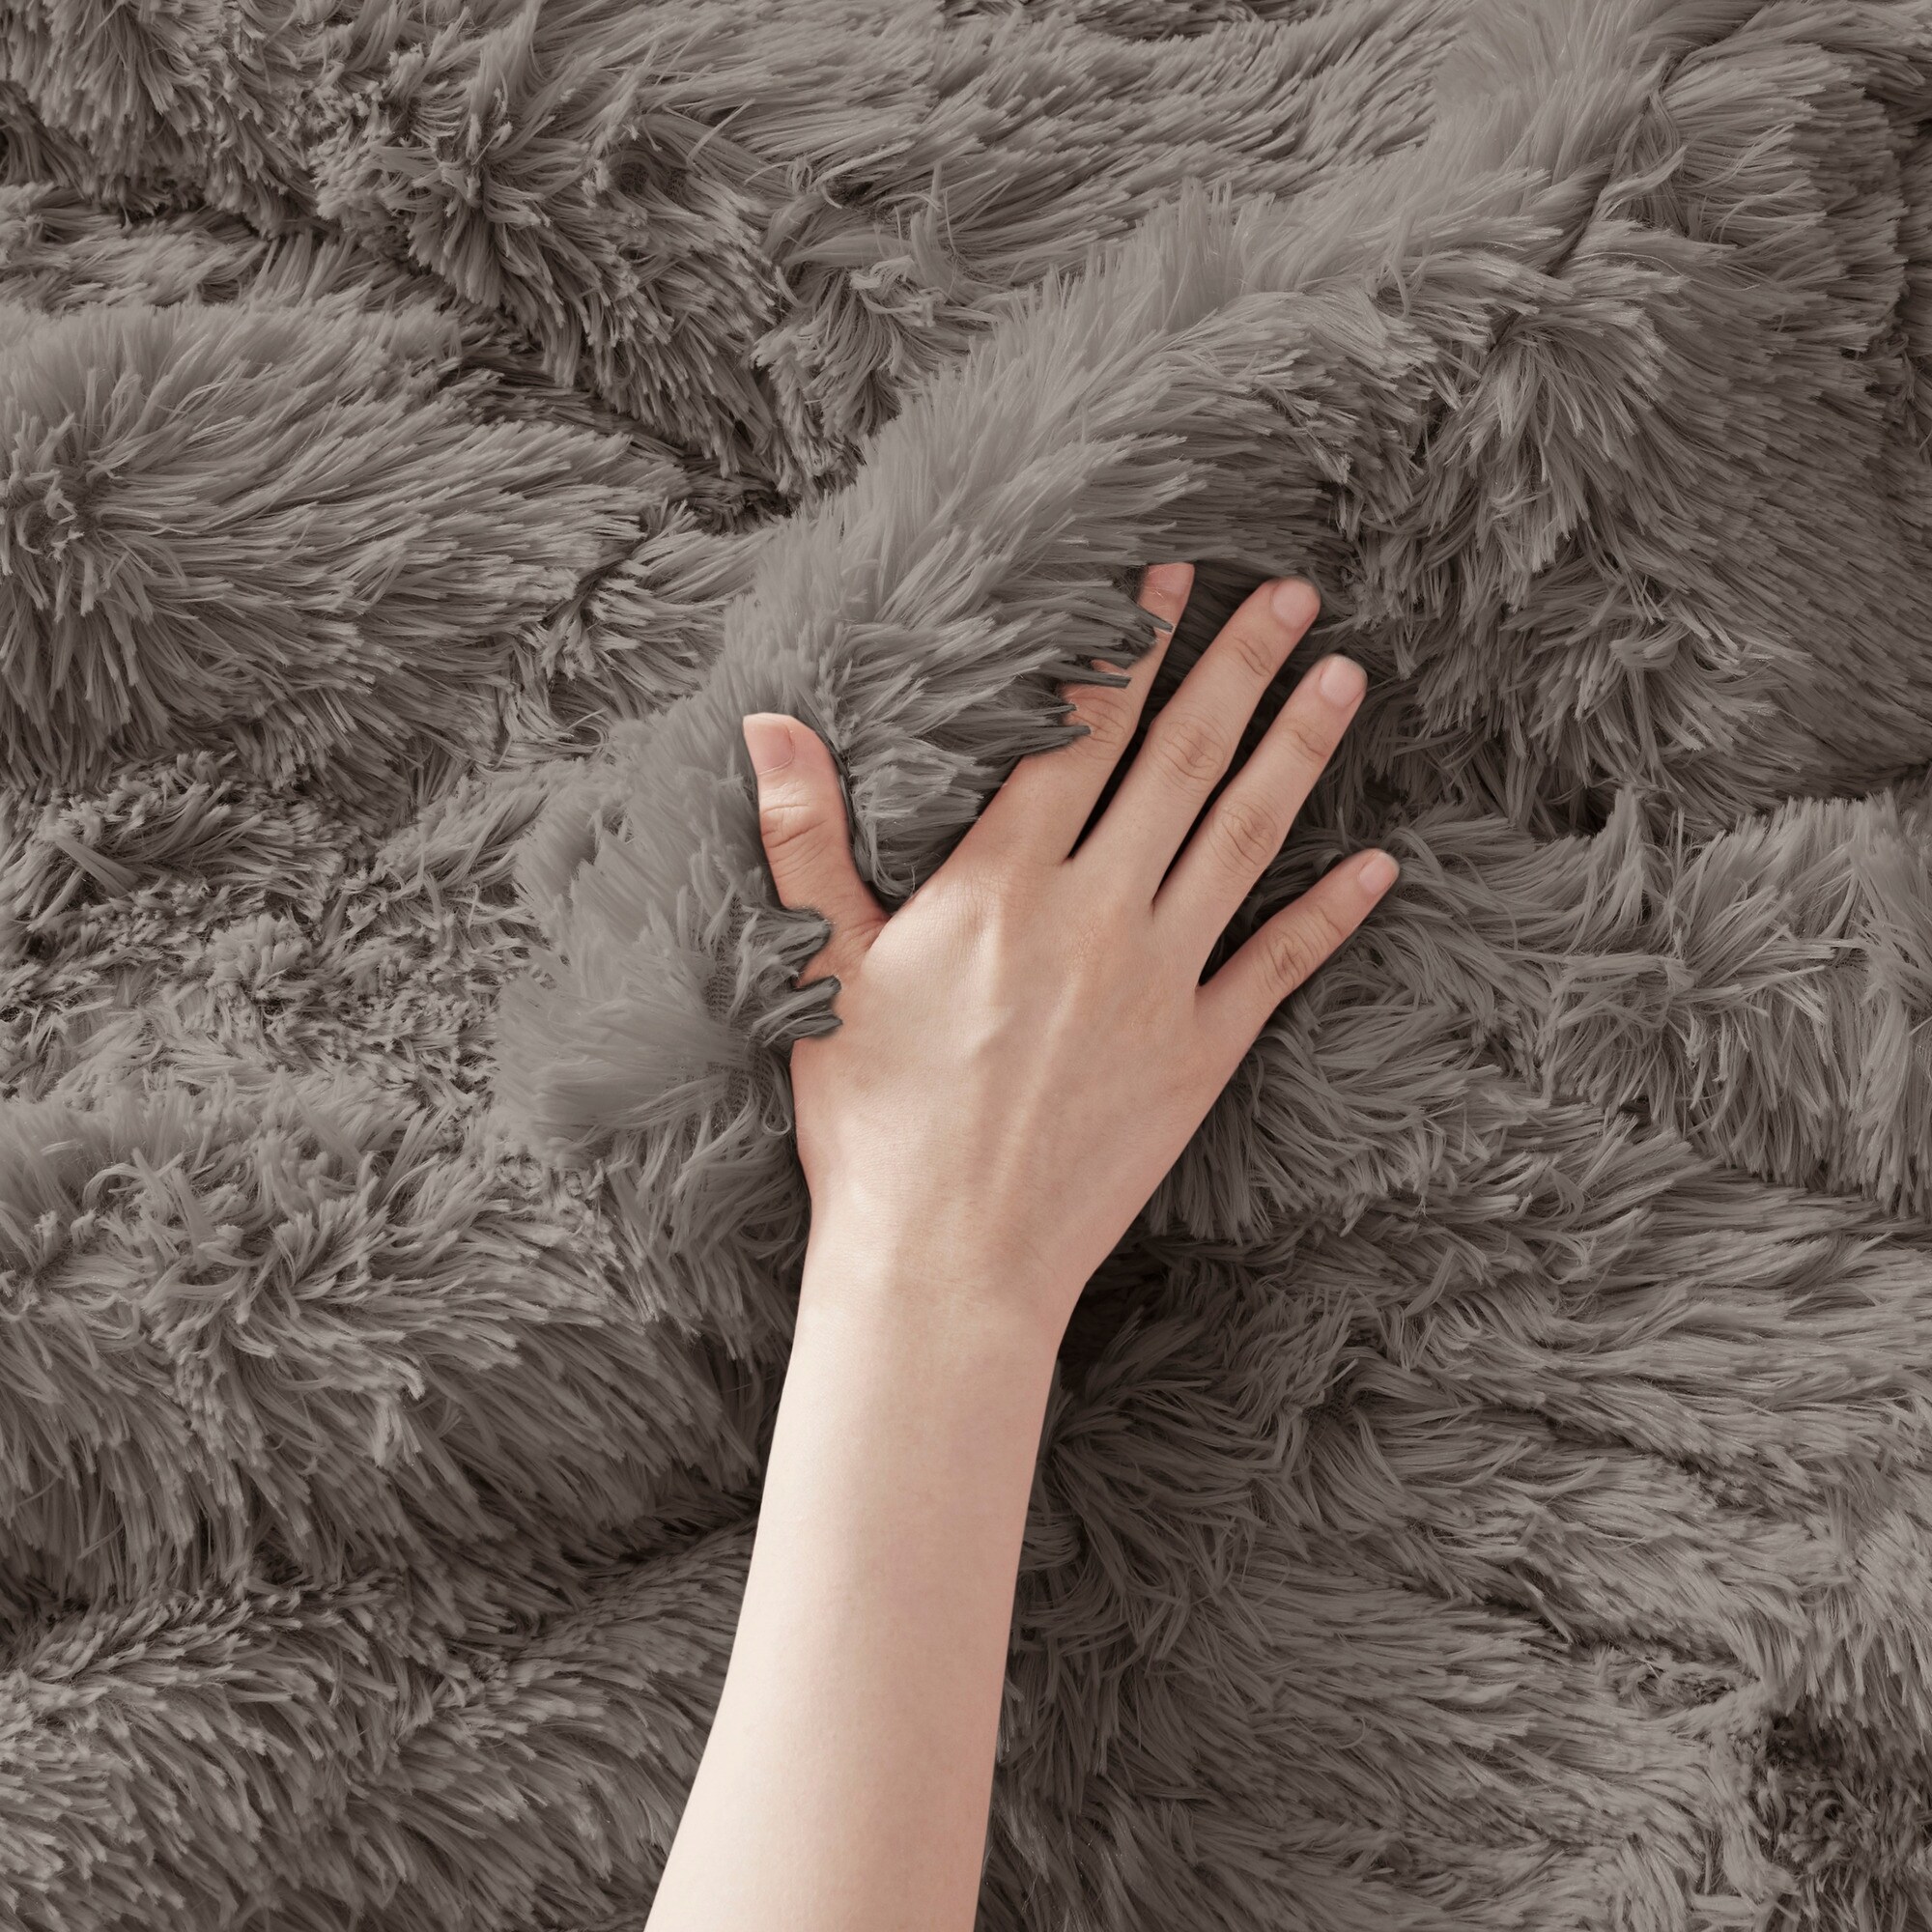 Details about   Intelligent Design Malea 2 Piece Shaggy Faux Fur Comforter Solid Plush Double Si 